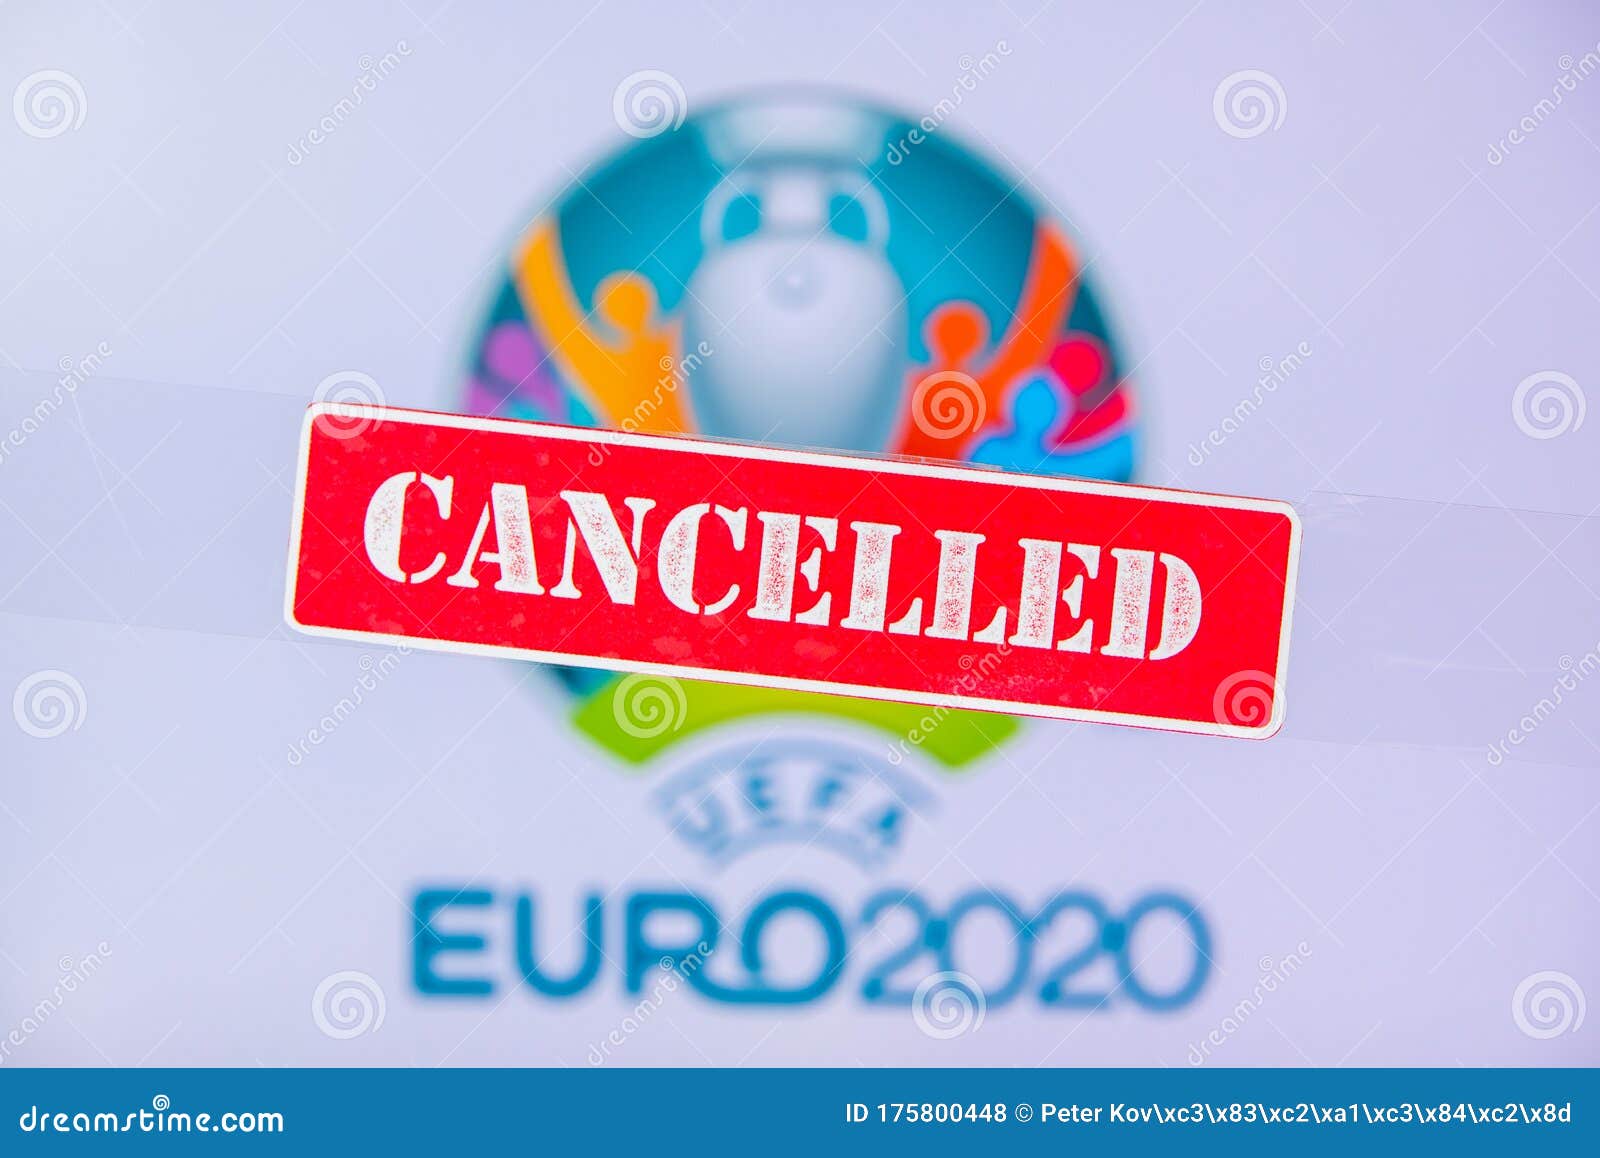 euro pro tour cancelled